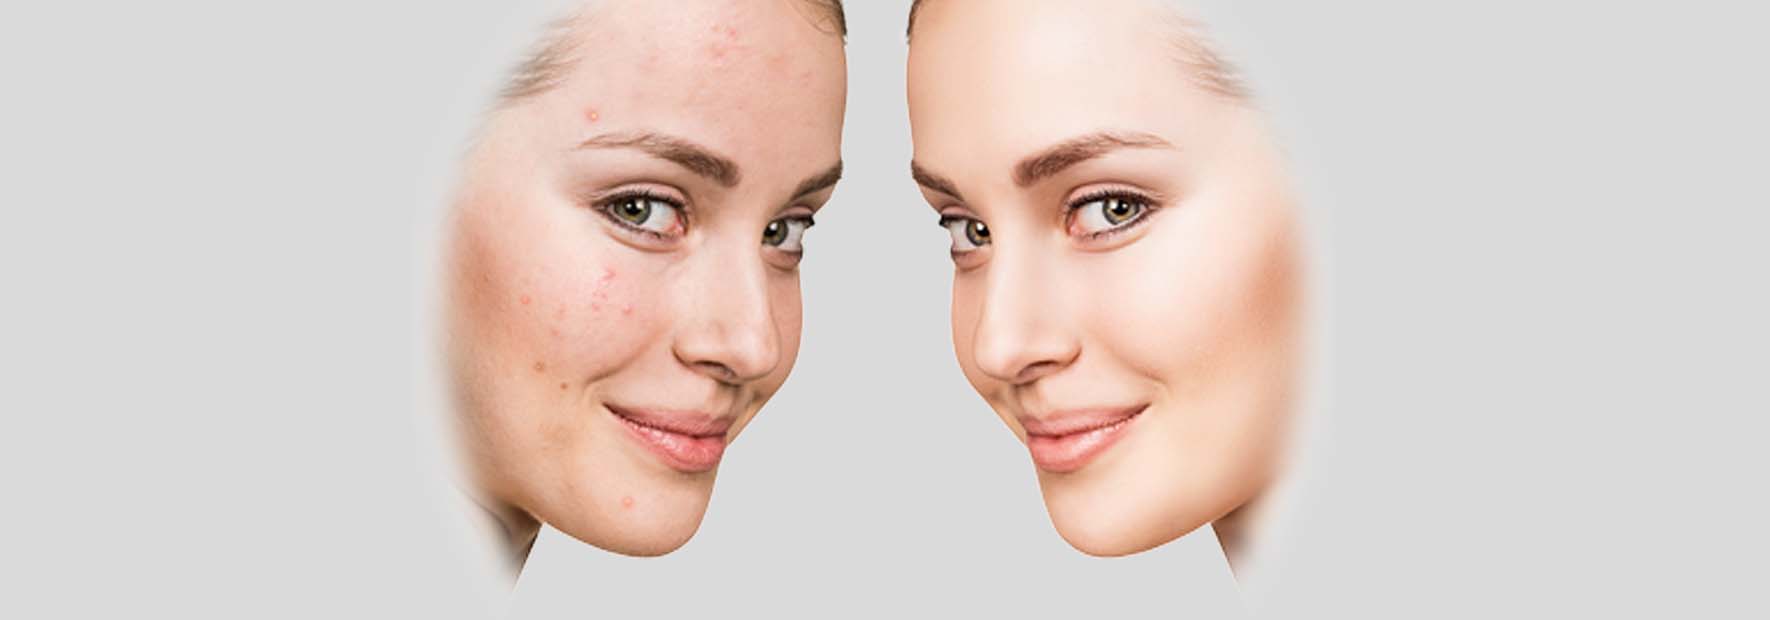 eliminare i segni dell'acne con il laser